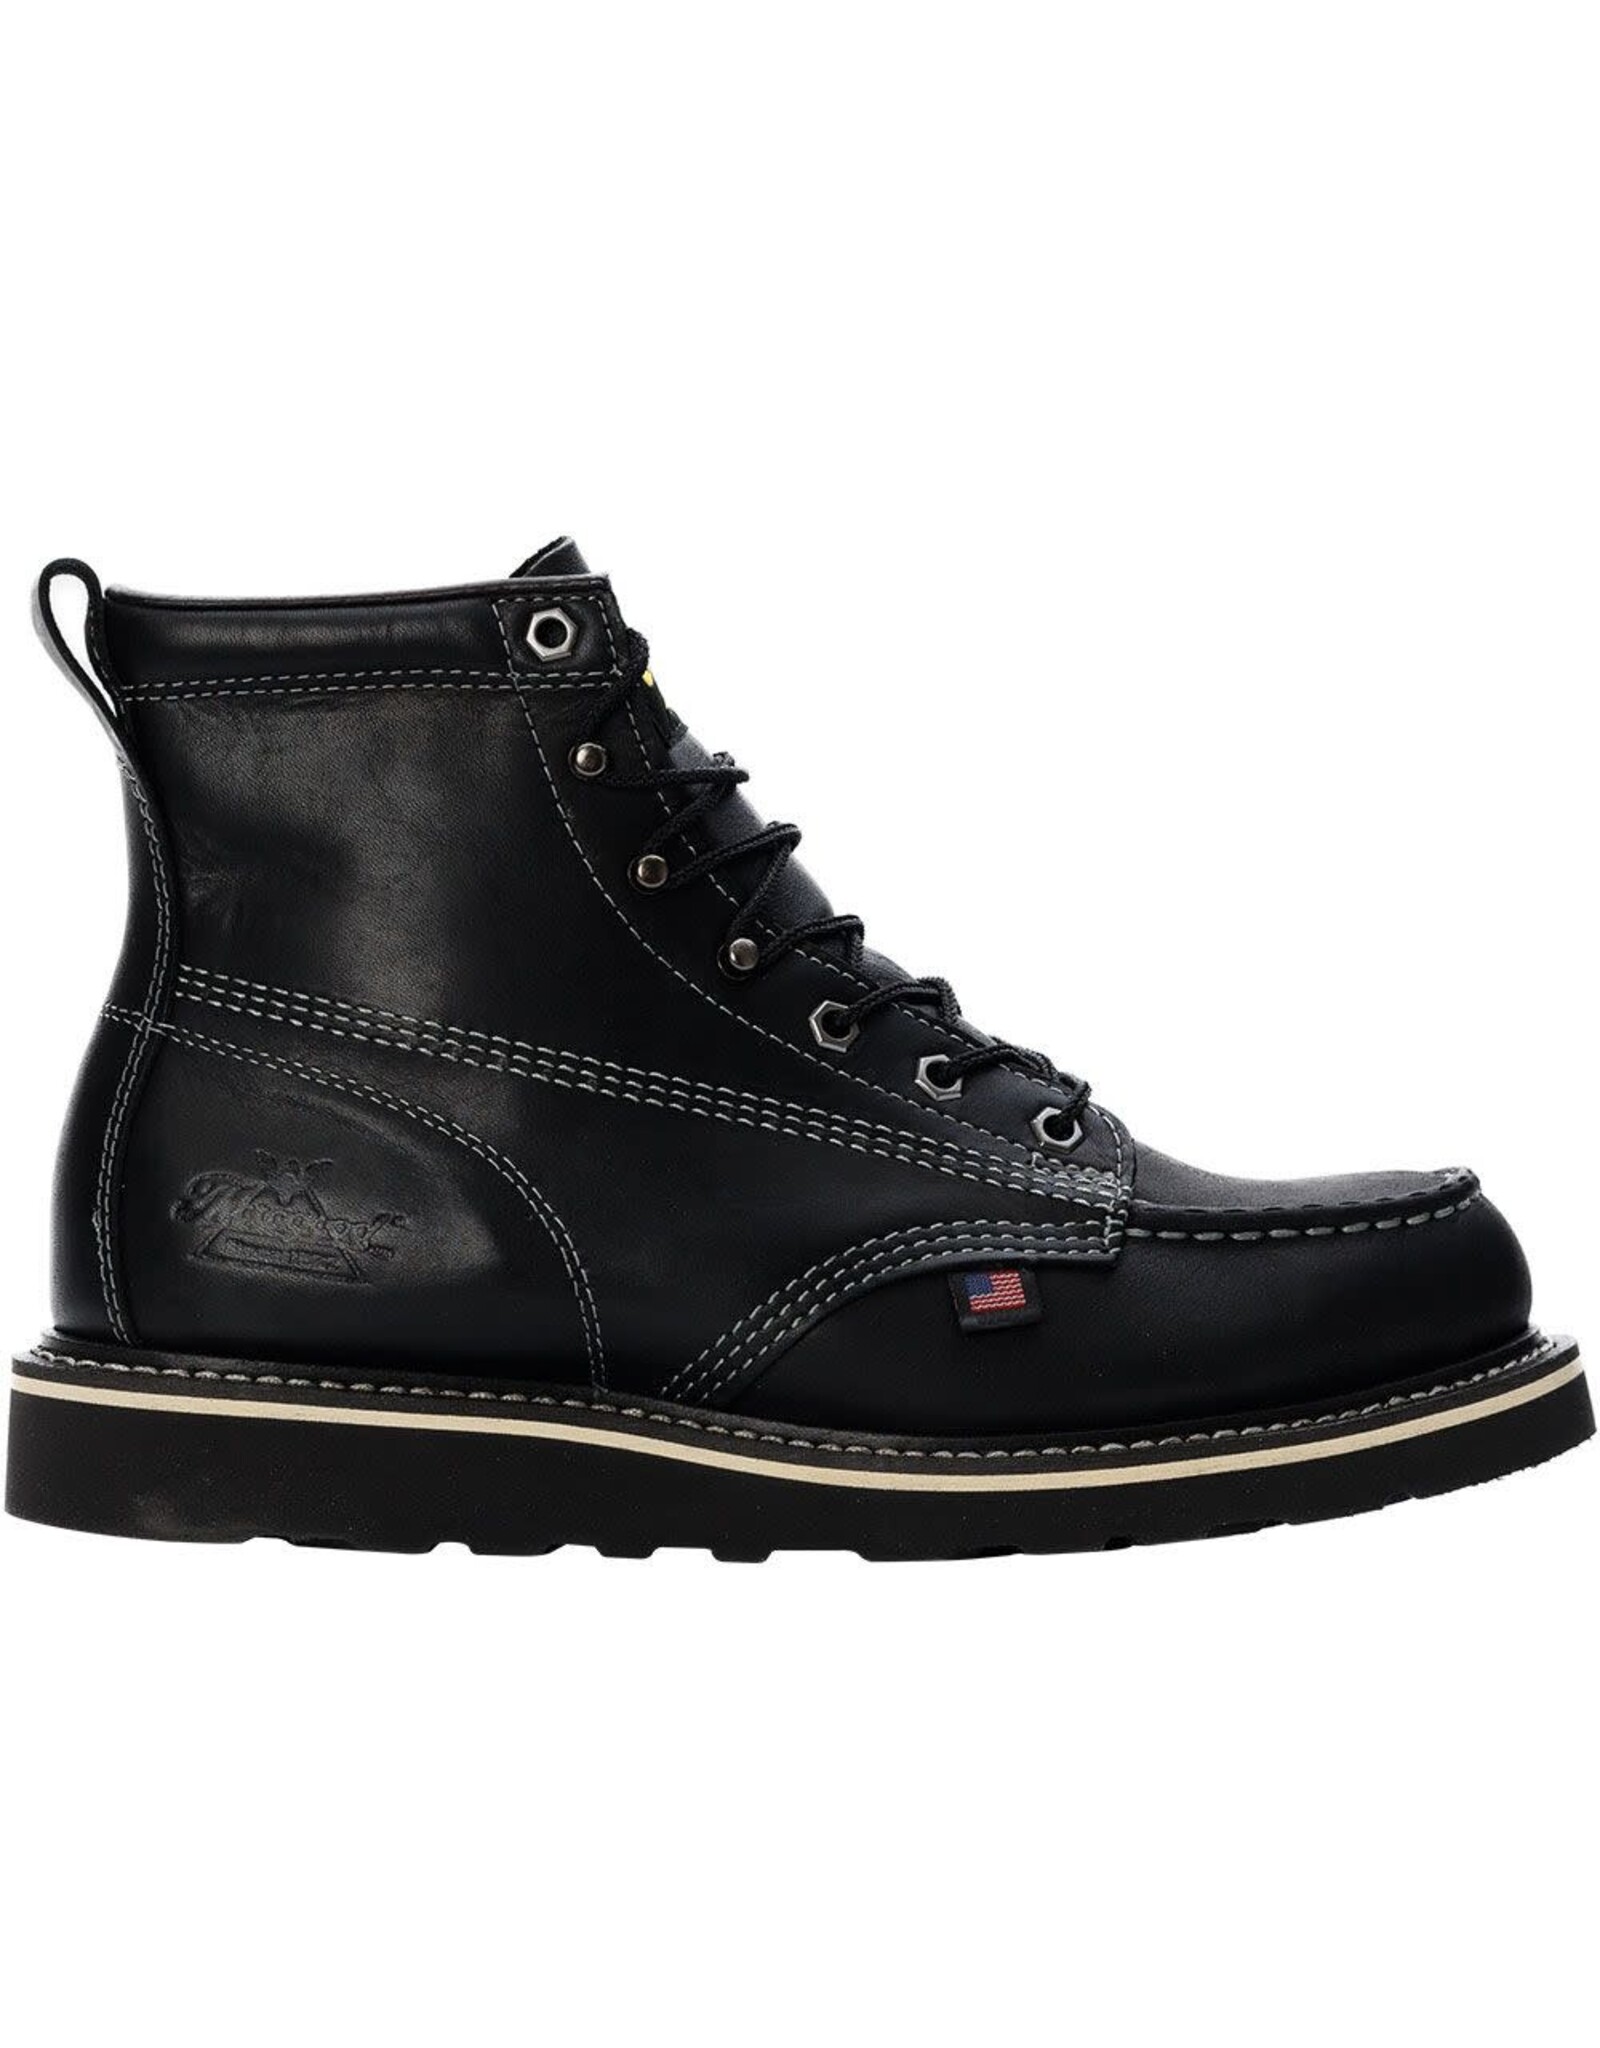 Thorogood Thorogood Men's 6” Black Maxwear Wedge Soft Toe 814-6206  Soft Toe Work Boots